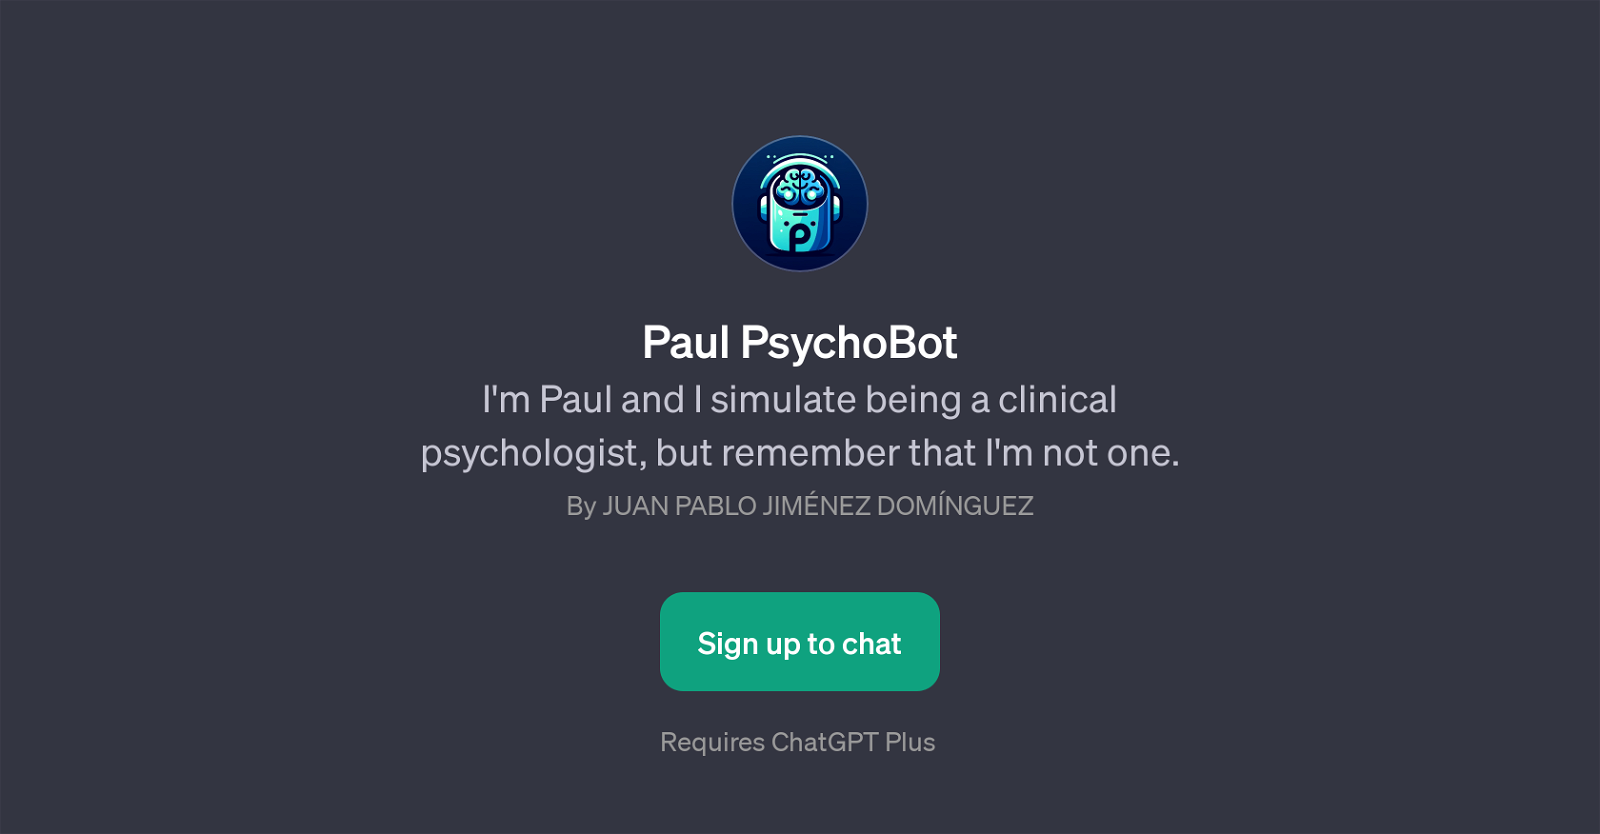 Paul PsychoBot website